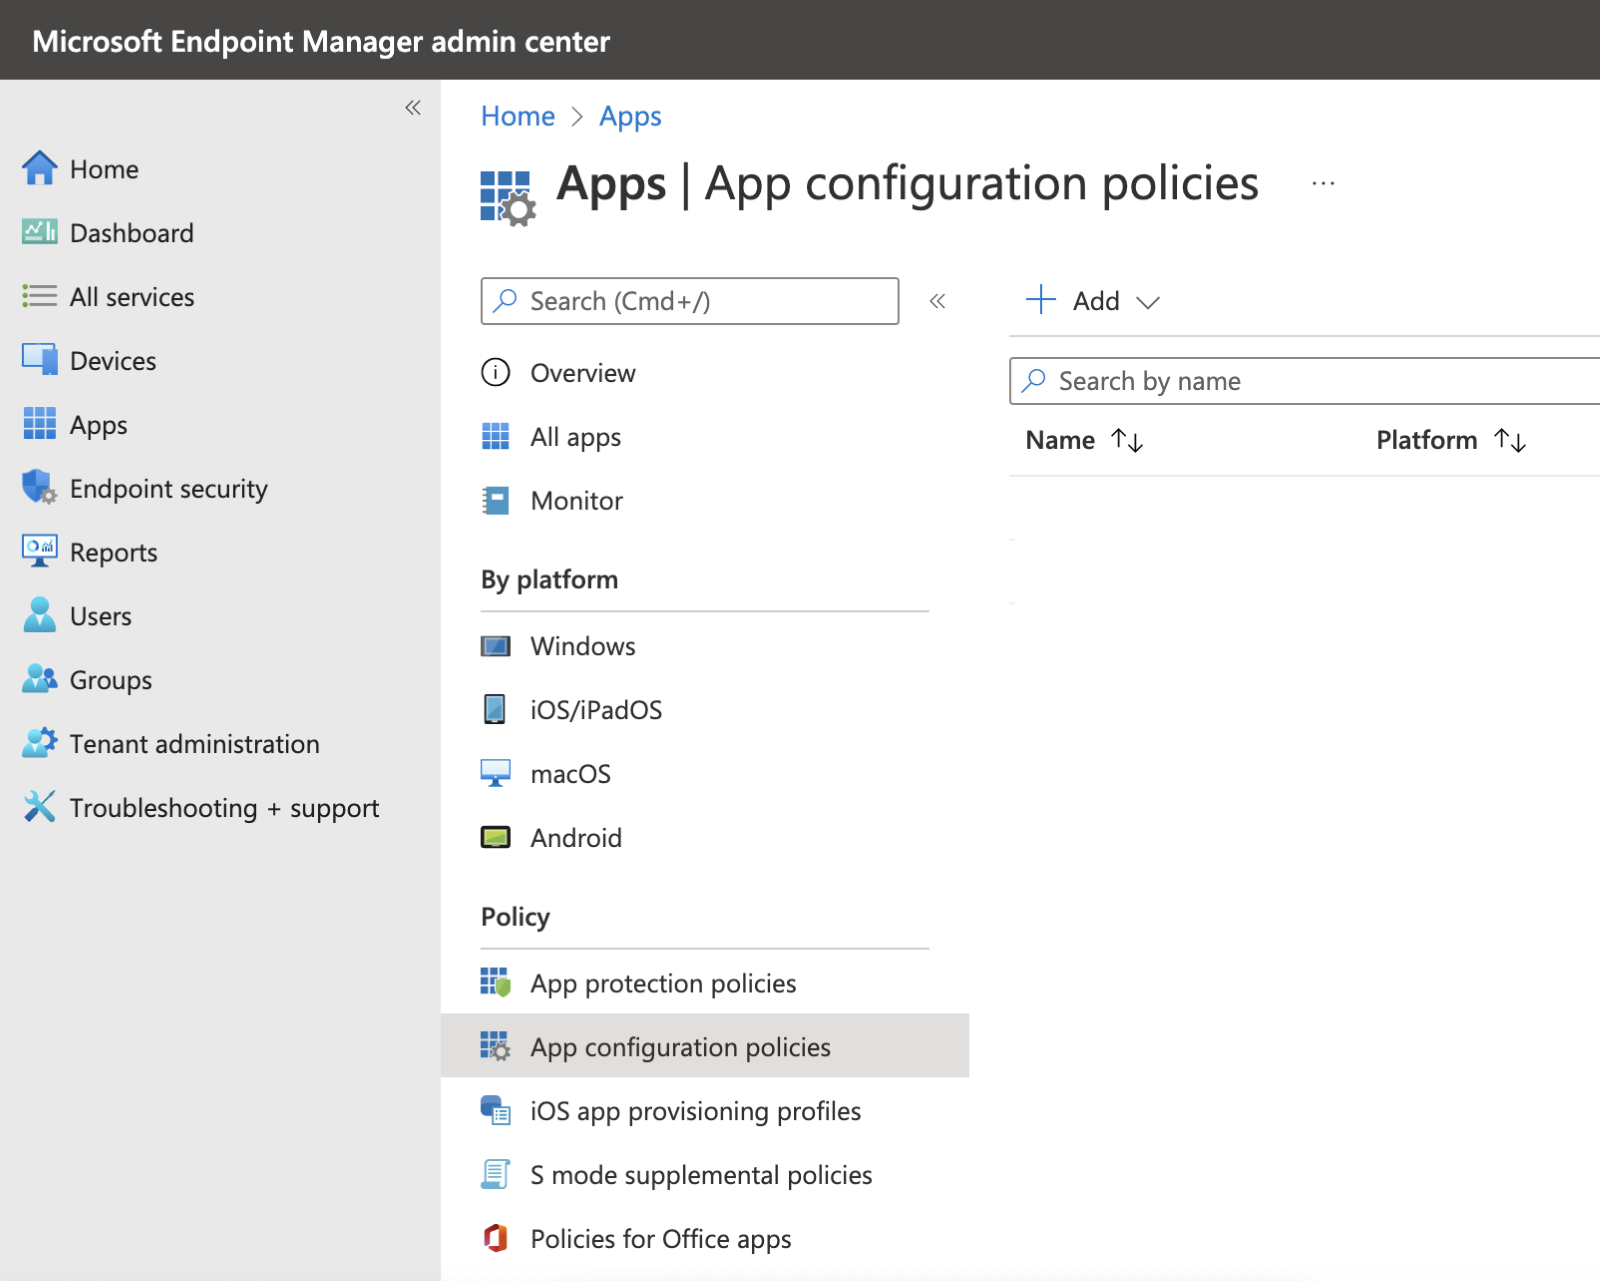 App configuration policies